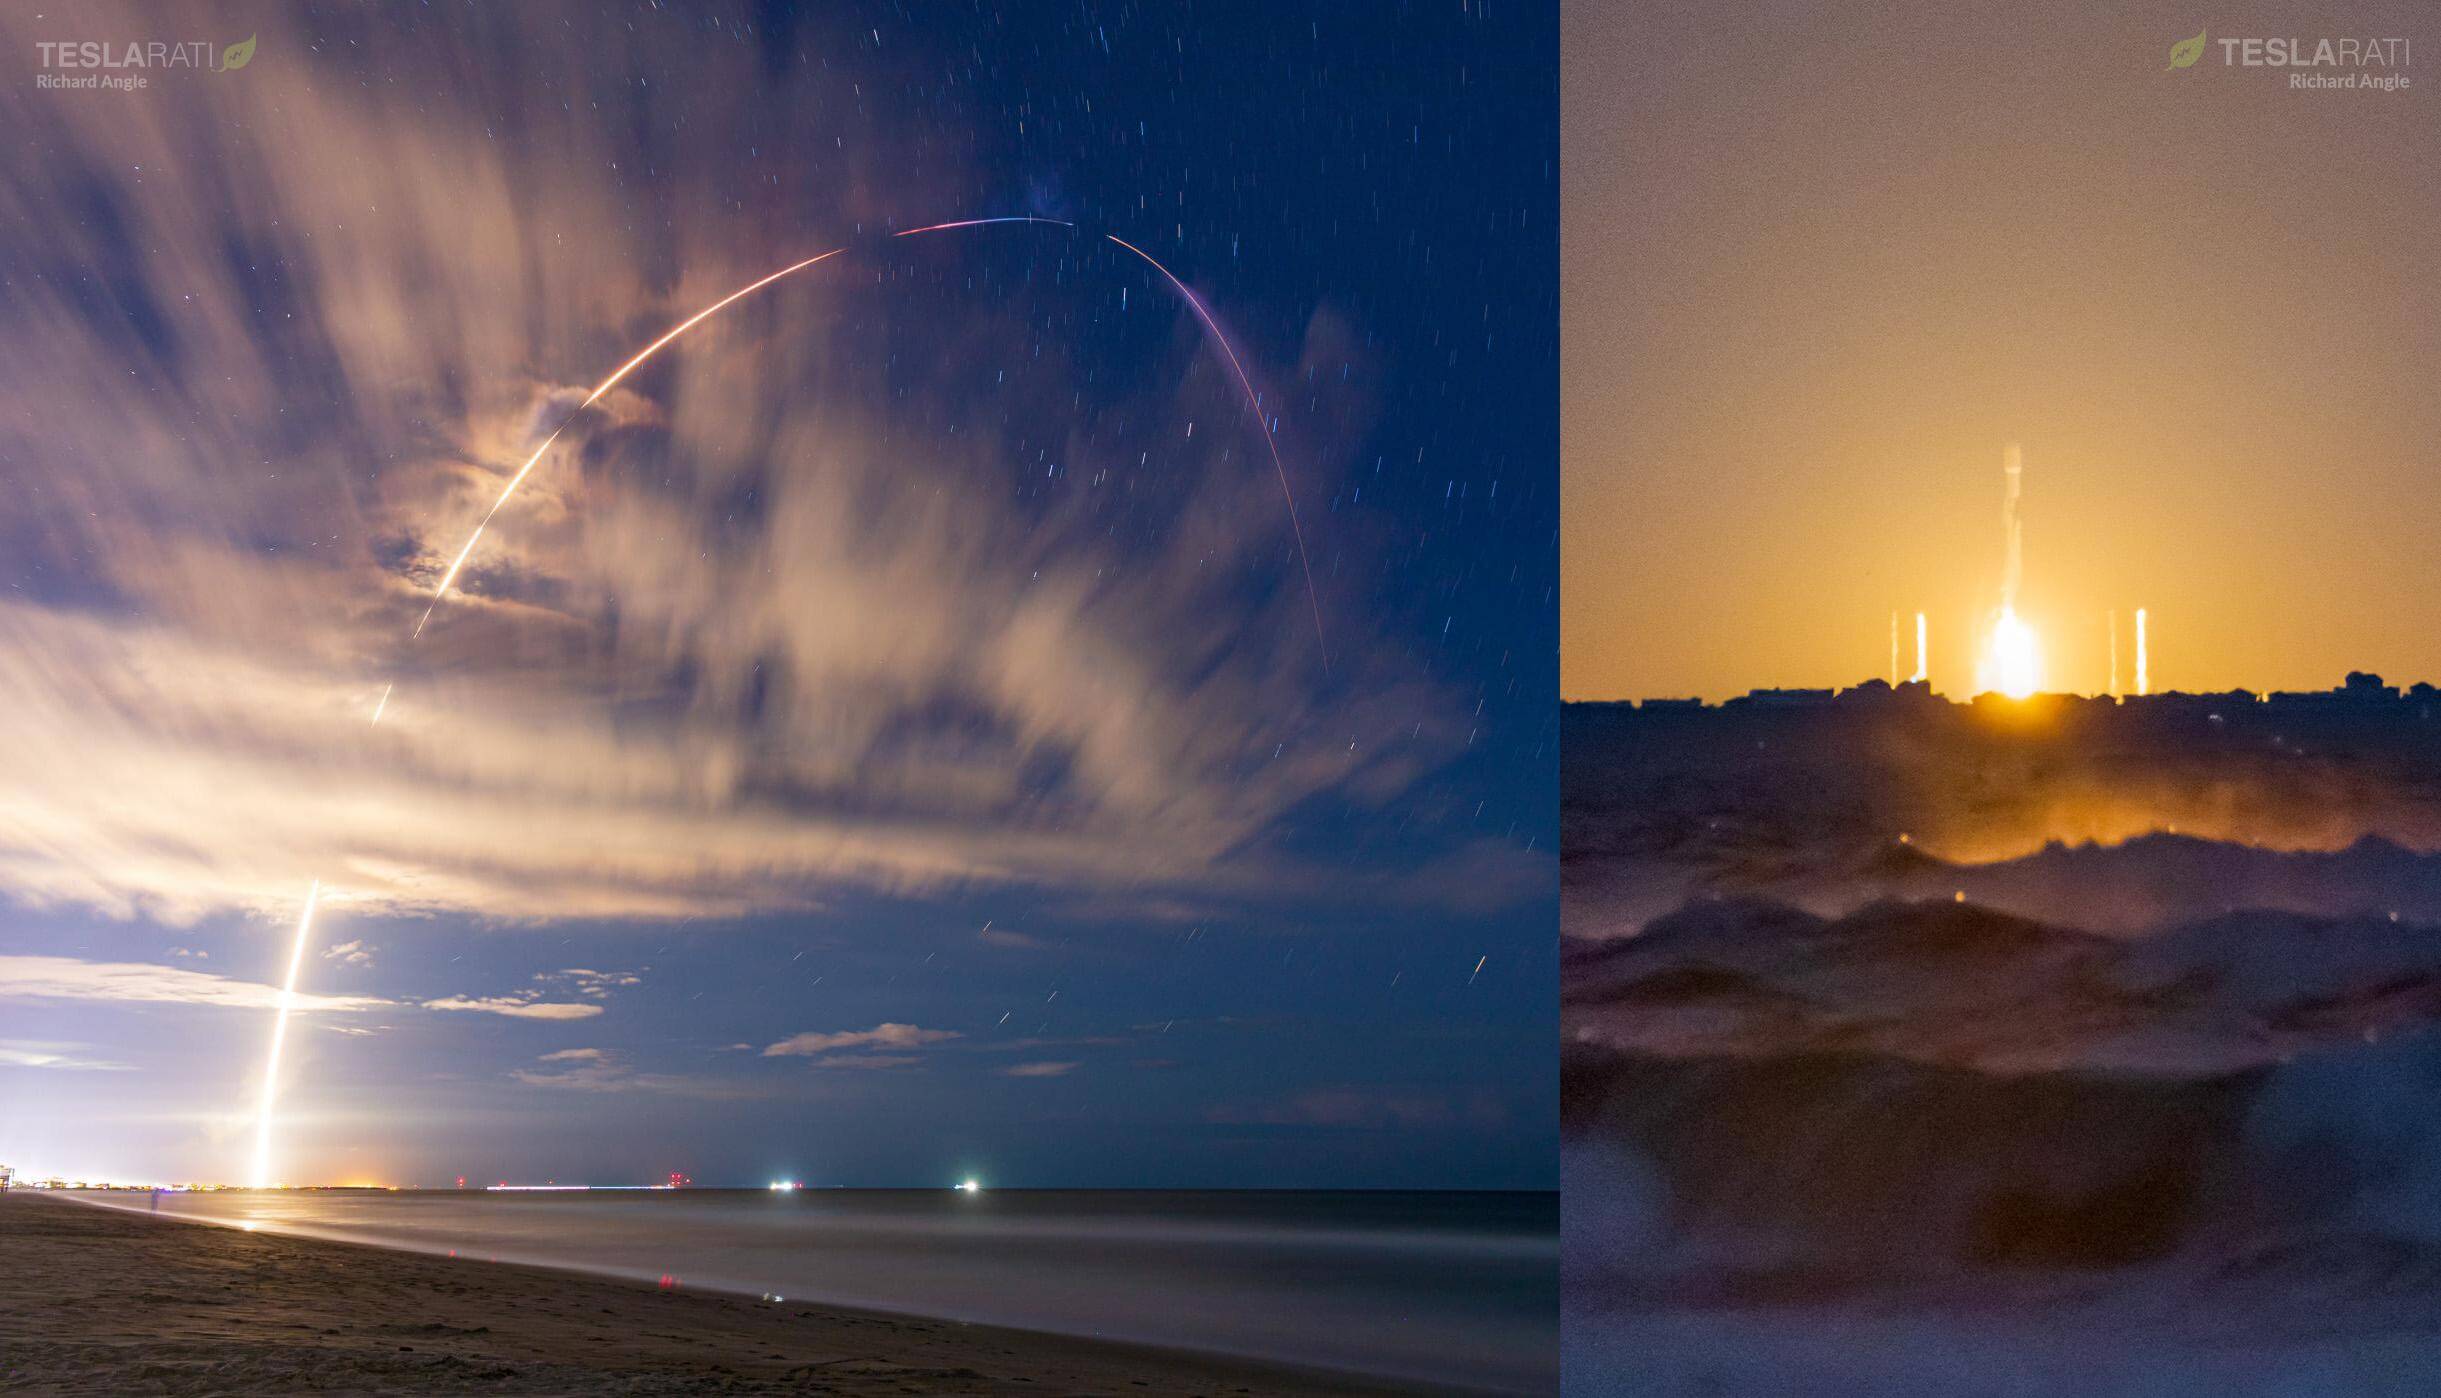 SpaceX rompe el récord de respuesta de la plataforma con dos lanzamientos de Falcon 9 en seis días